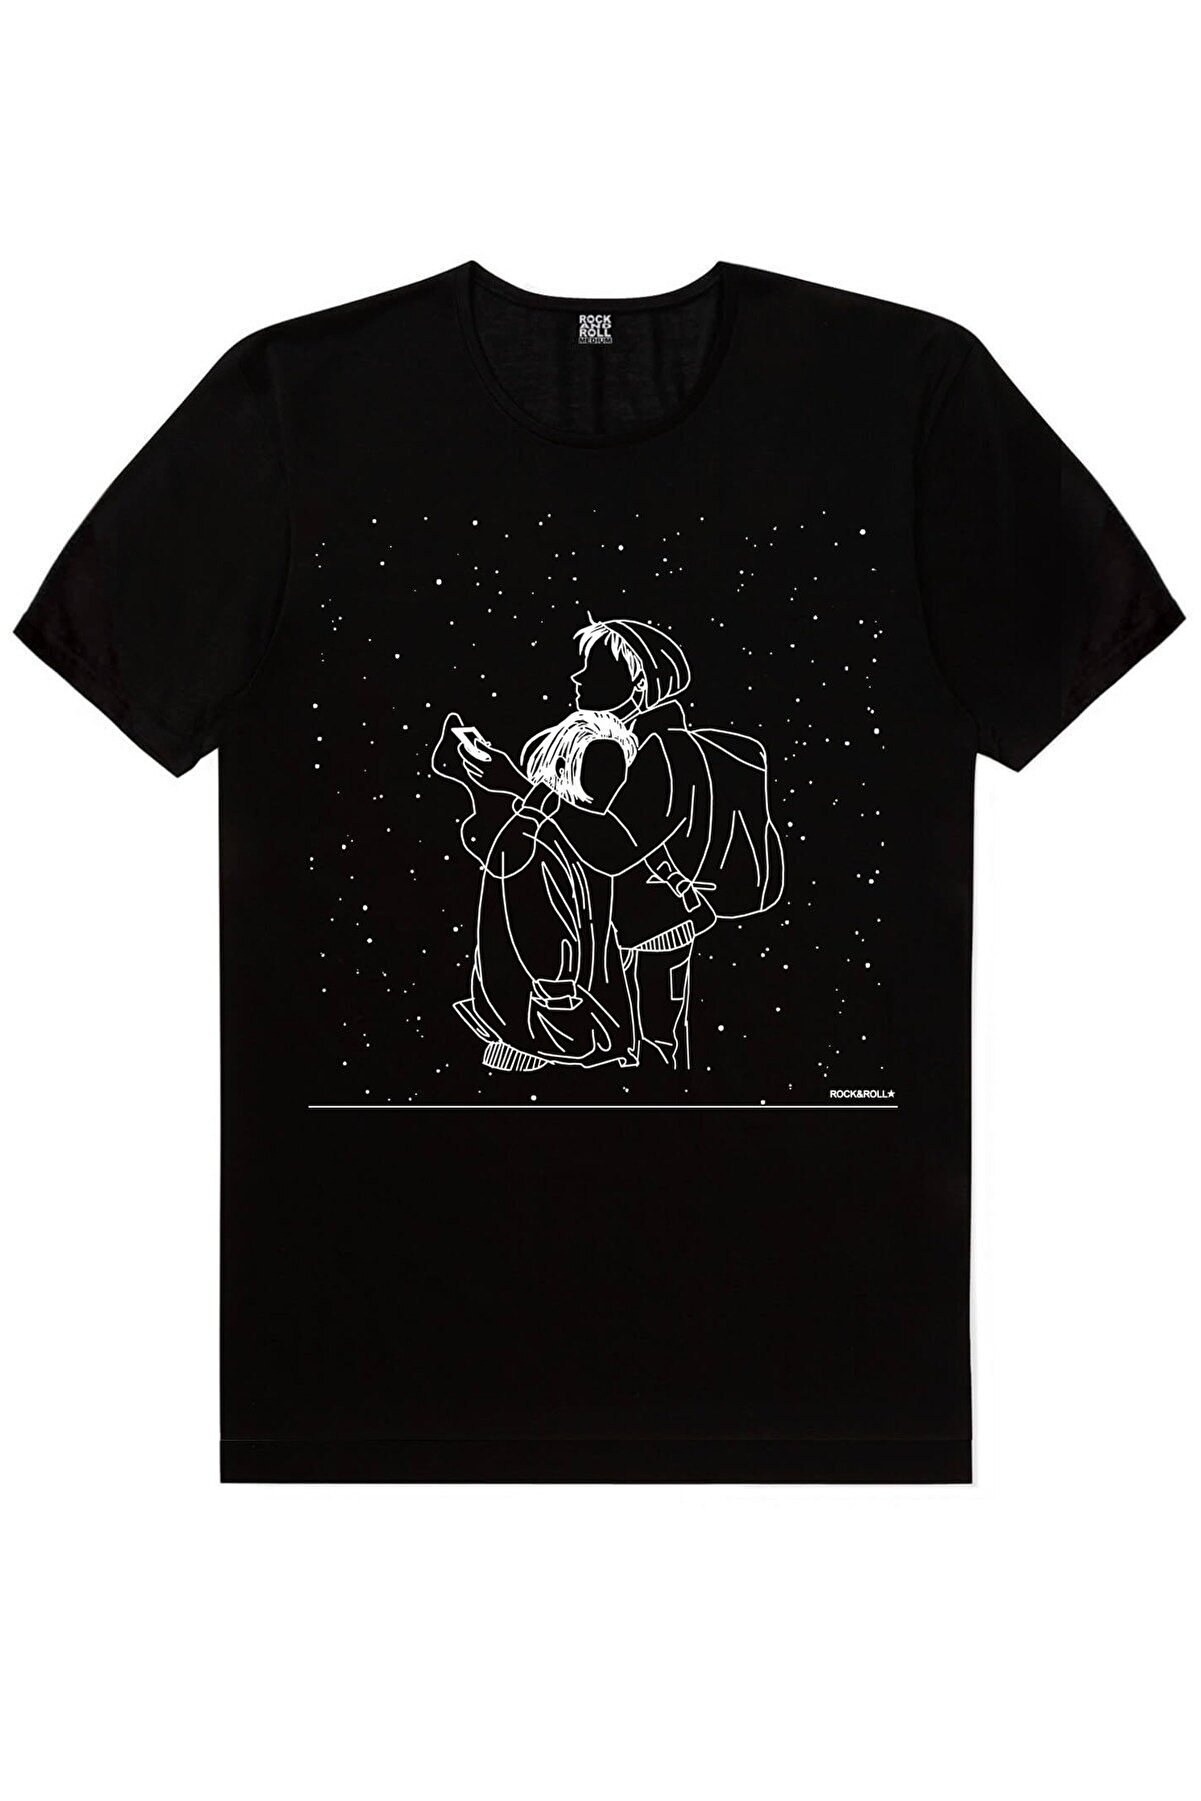 Balon Gezegenler, Karlar Düşer, Süpürgeli Astronot Kadın 3'lü Eko Paket T-shirt